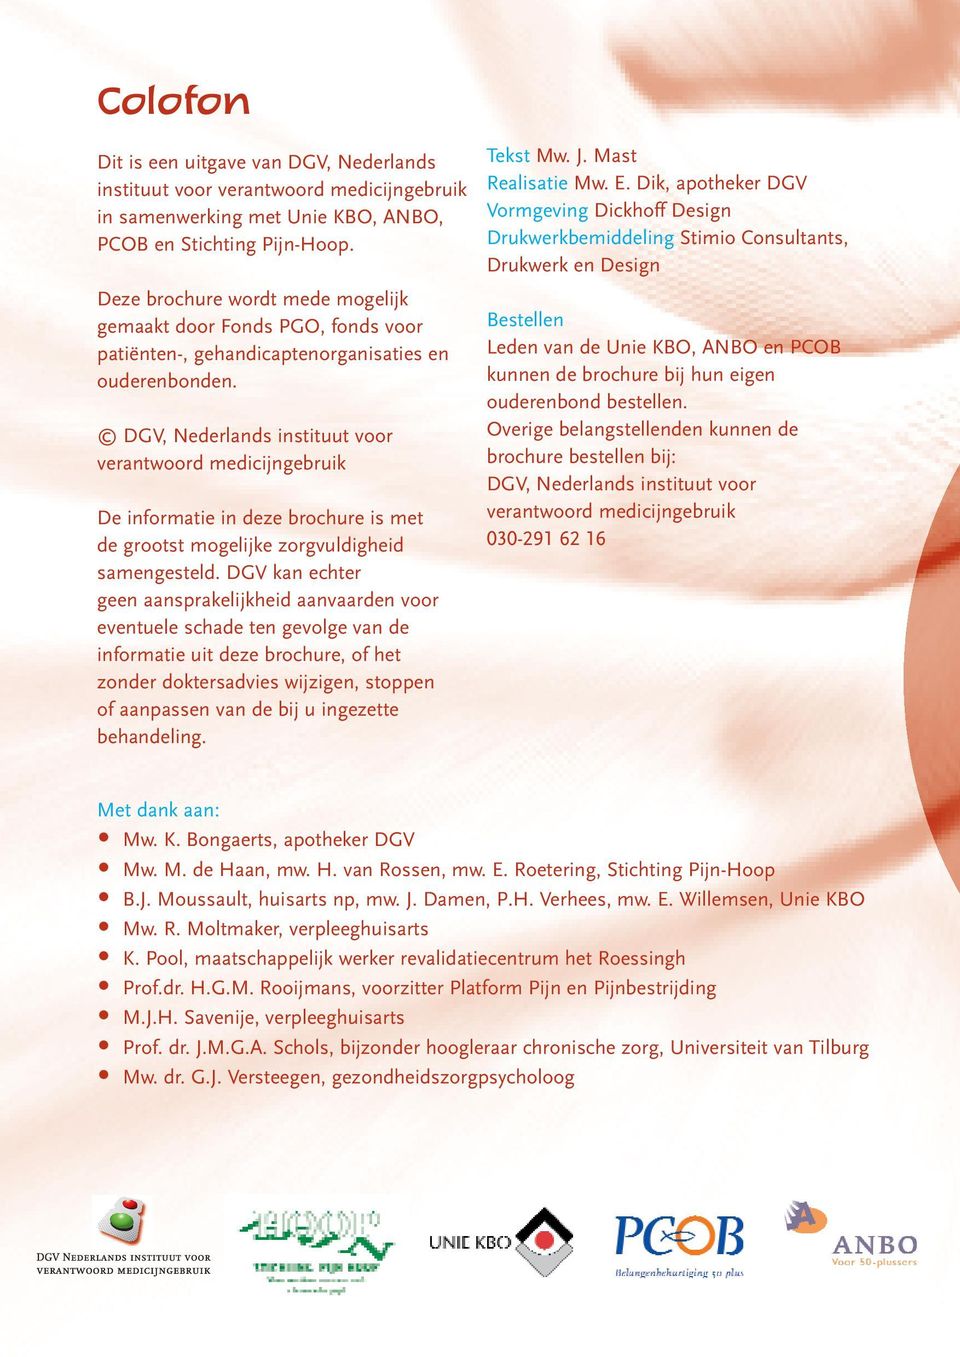 DGV, Nederlands instituut voor verantwoord medicijngebruik De informatie in deze brochure is met de grootst mogelijke zorgvuldigheid samengesteld.